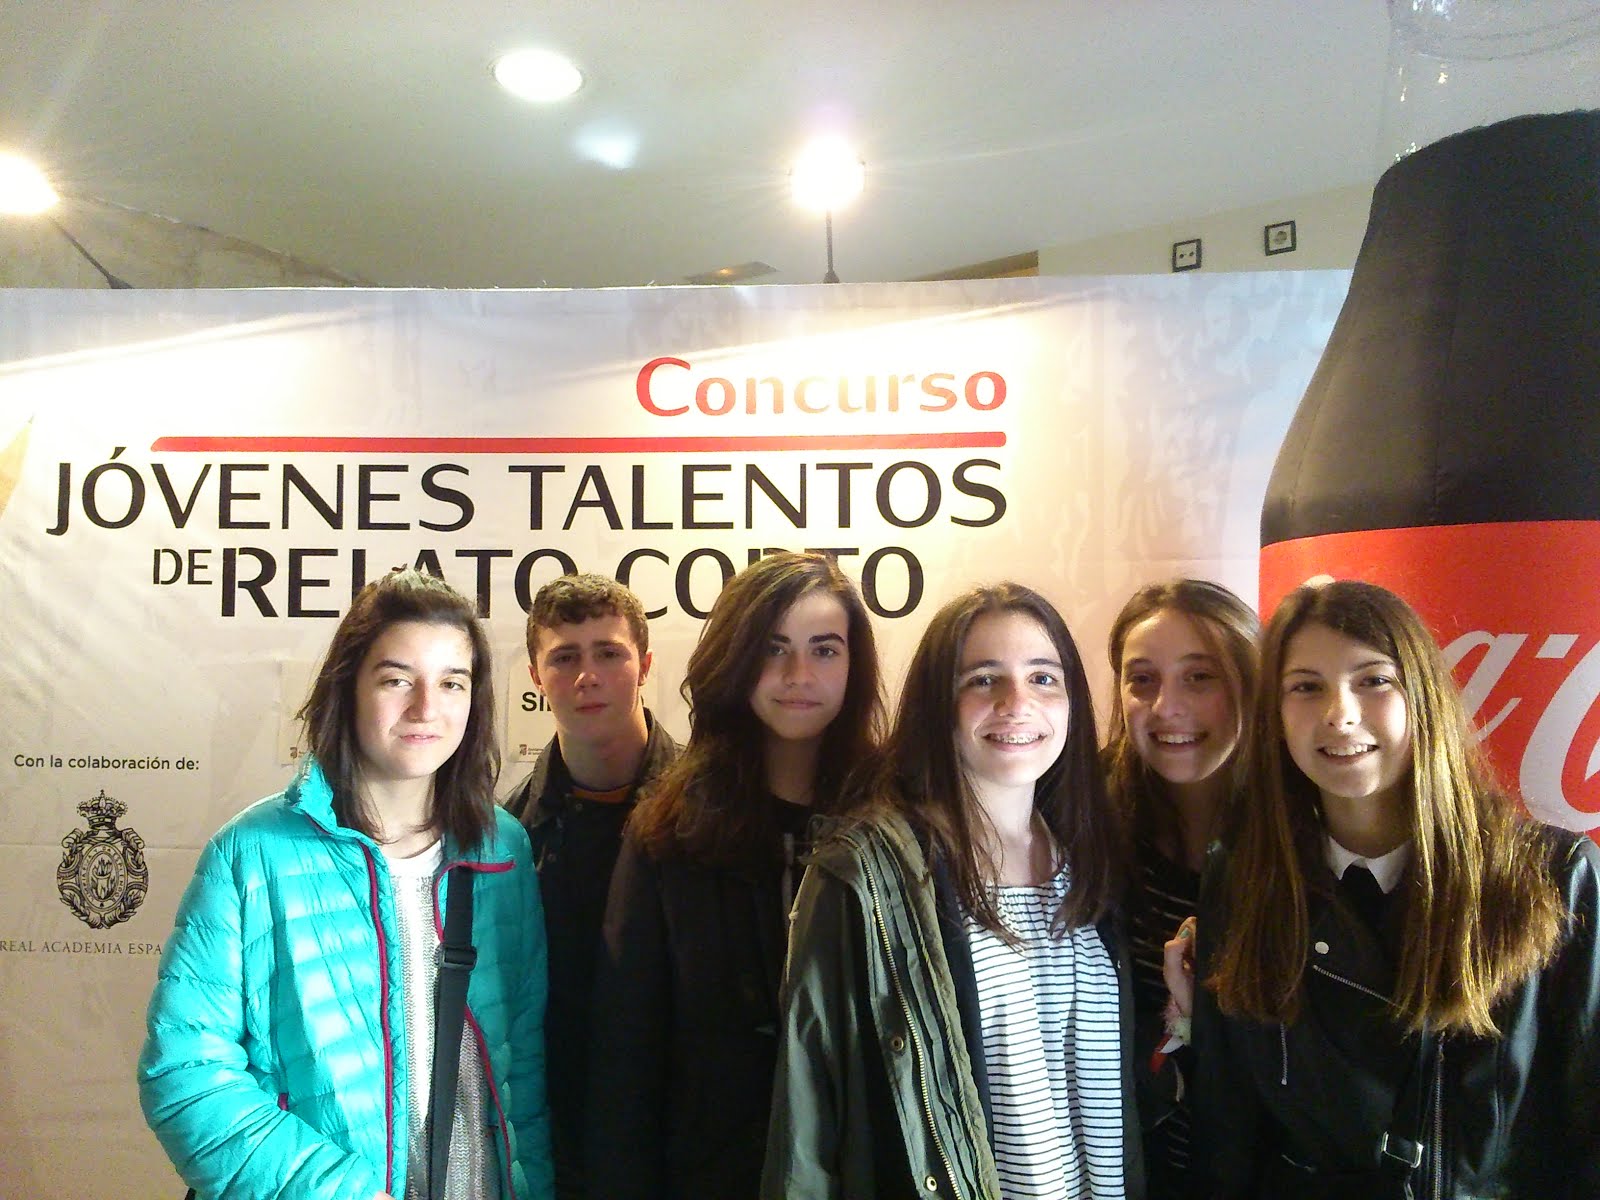 Concurso Jóvenes Talentos de Relato Corto. Salamanca, 2016